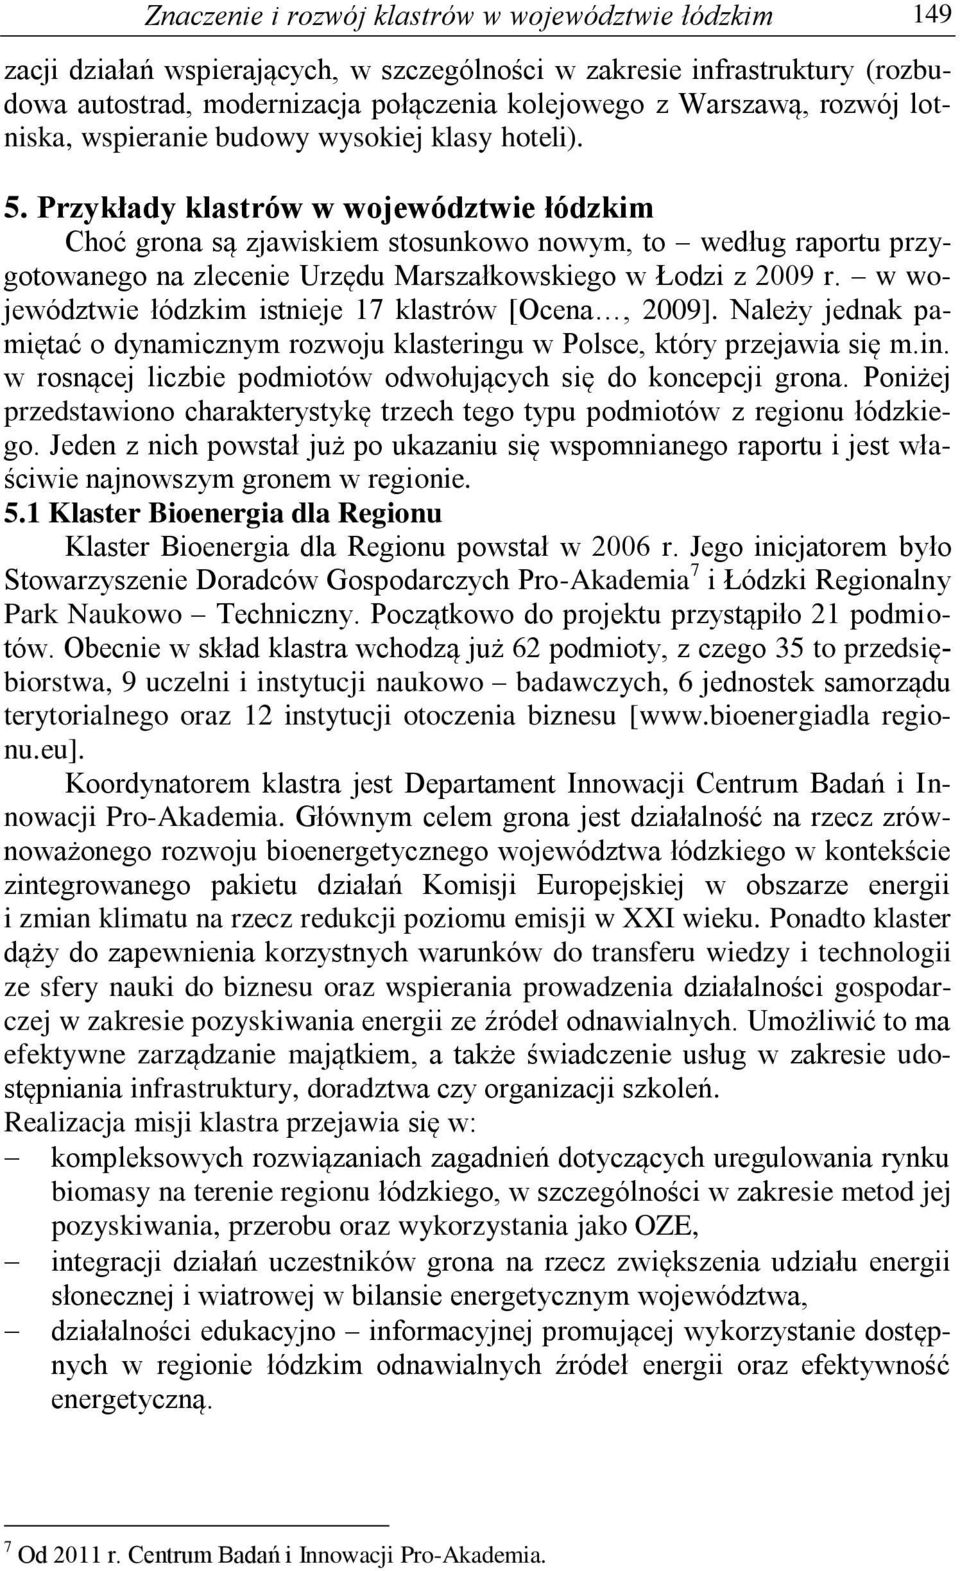 Przykłady klastrów w województwie łódzkim Choć grona są zjawiskiem stosunkowo nowym, to według raportu przygotowanego na zlecenie Urzędu Marszałkowskiego w Łodzi z 2009 r.